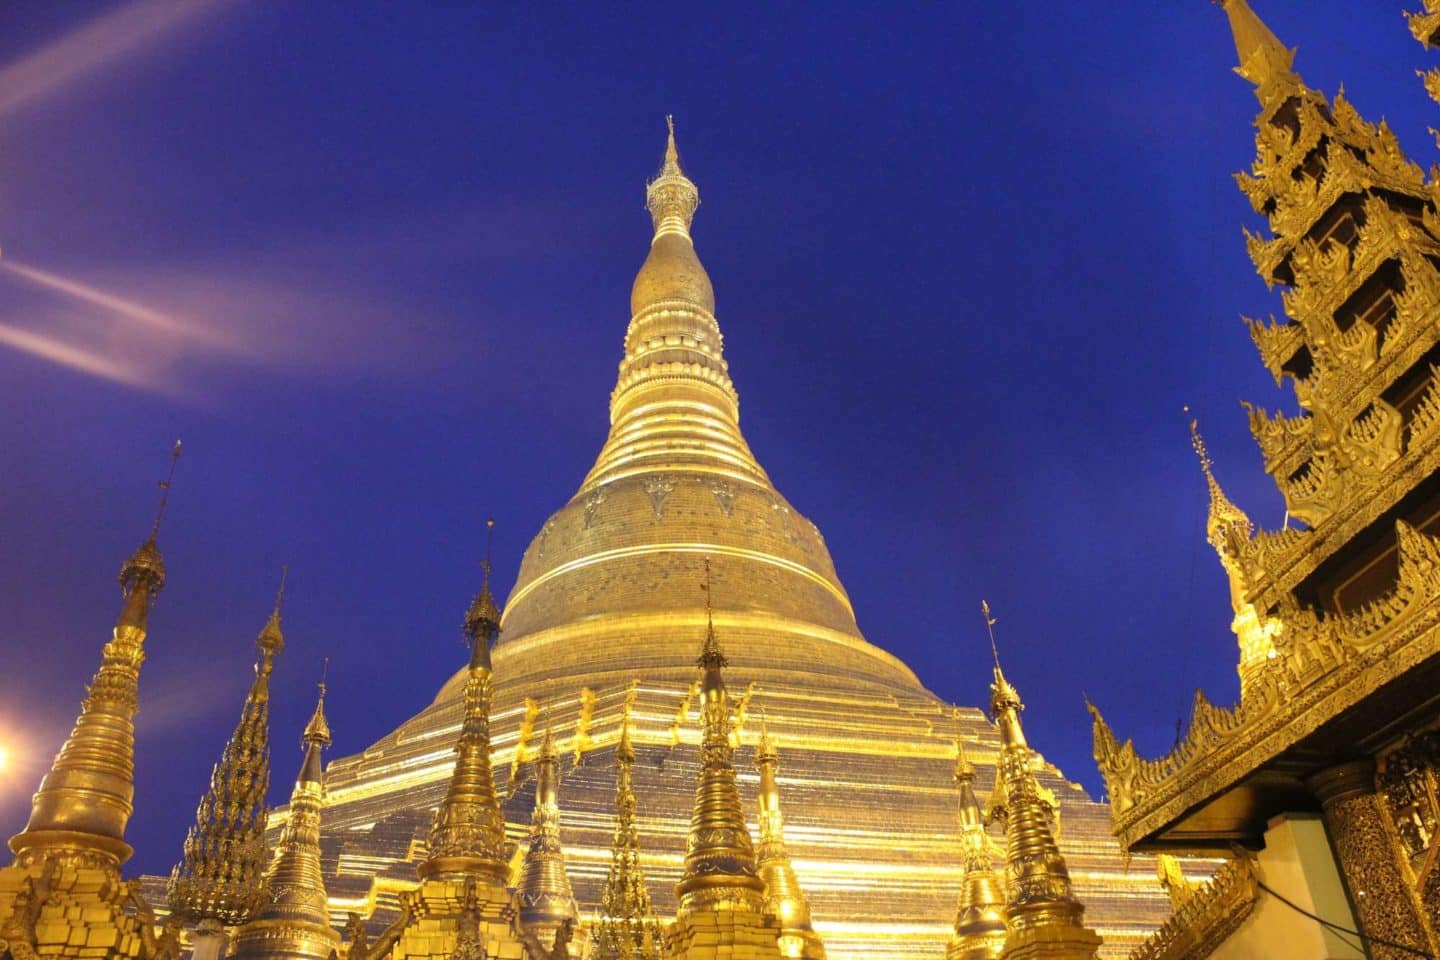 shwedagon pagoda at night